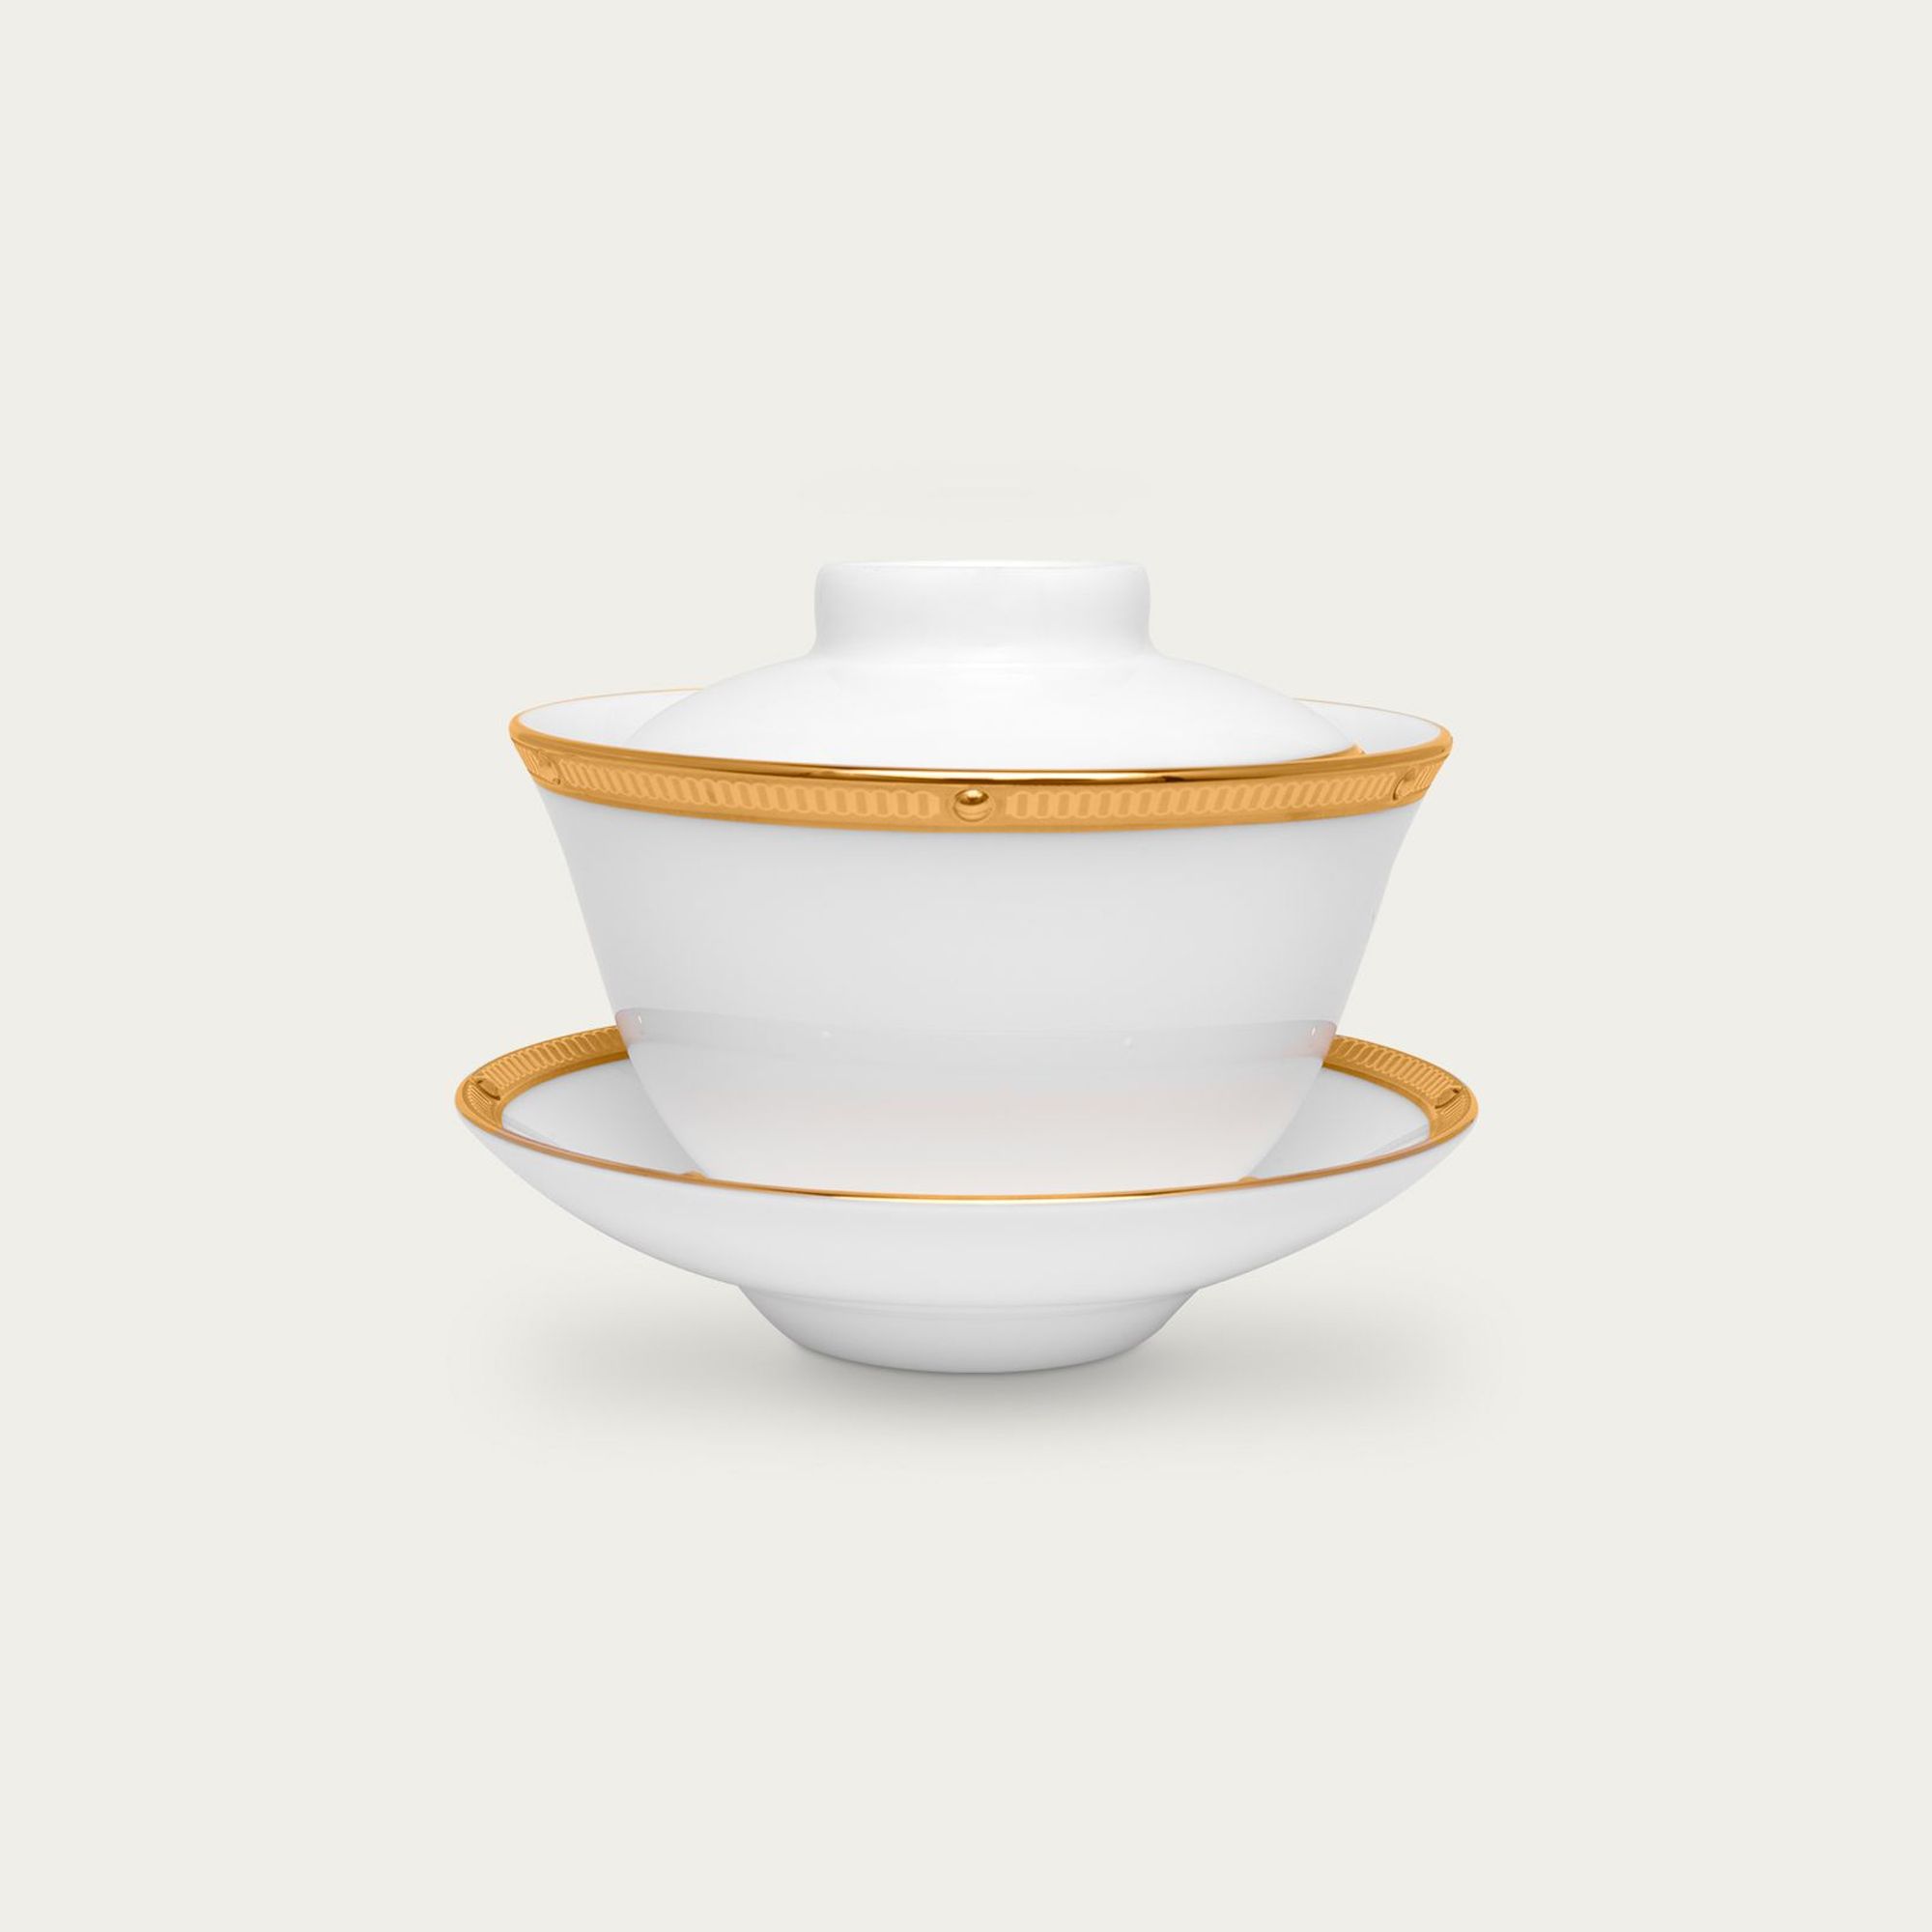  Chén trà (tách trà) có nắp đậy (không quai cầm) 160ml kèm đĩa lót | Rochelle Gold 4796L-T50157A 